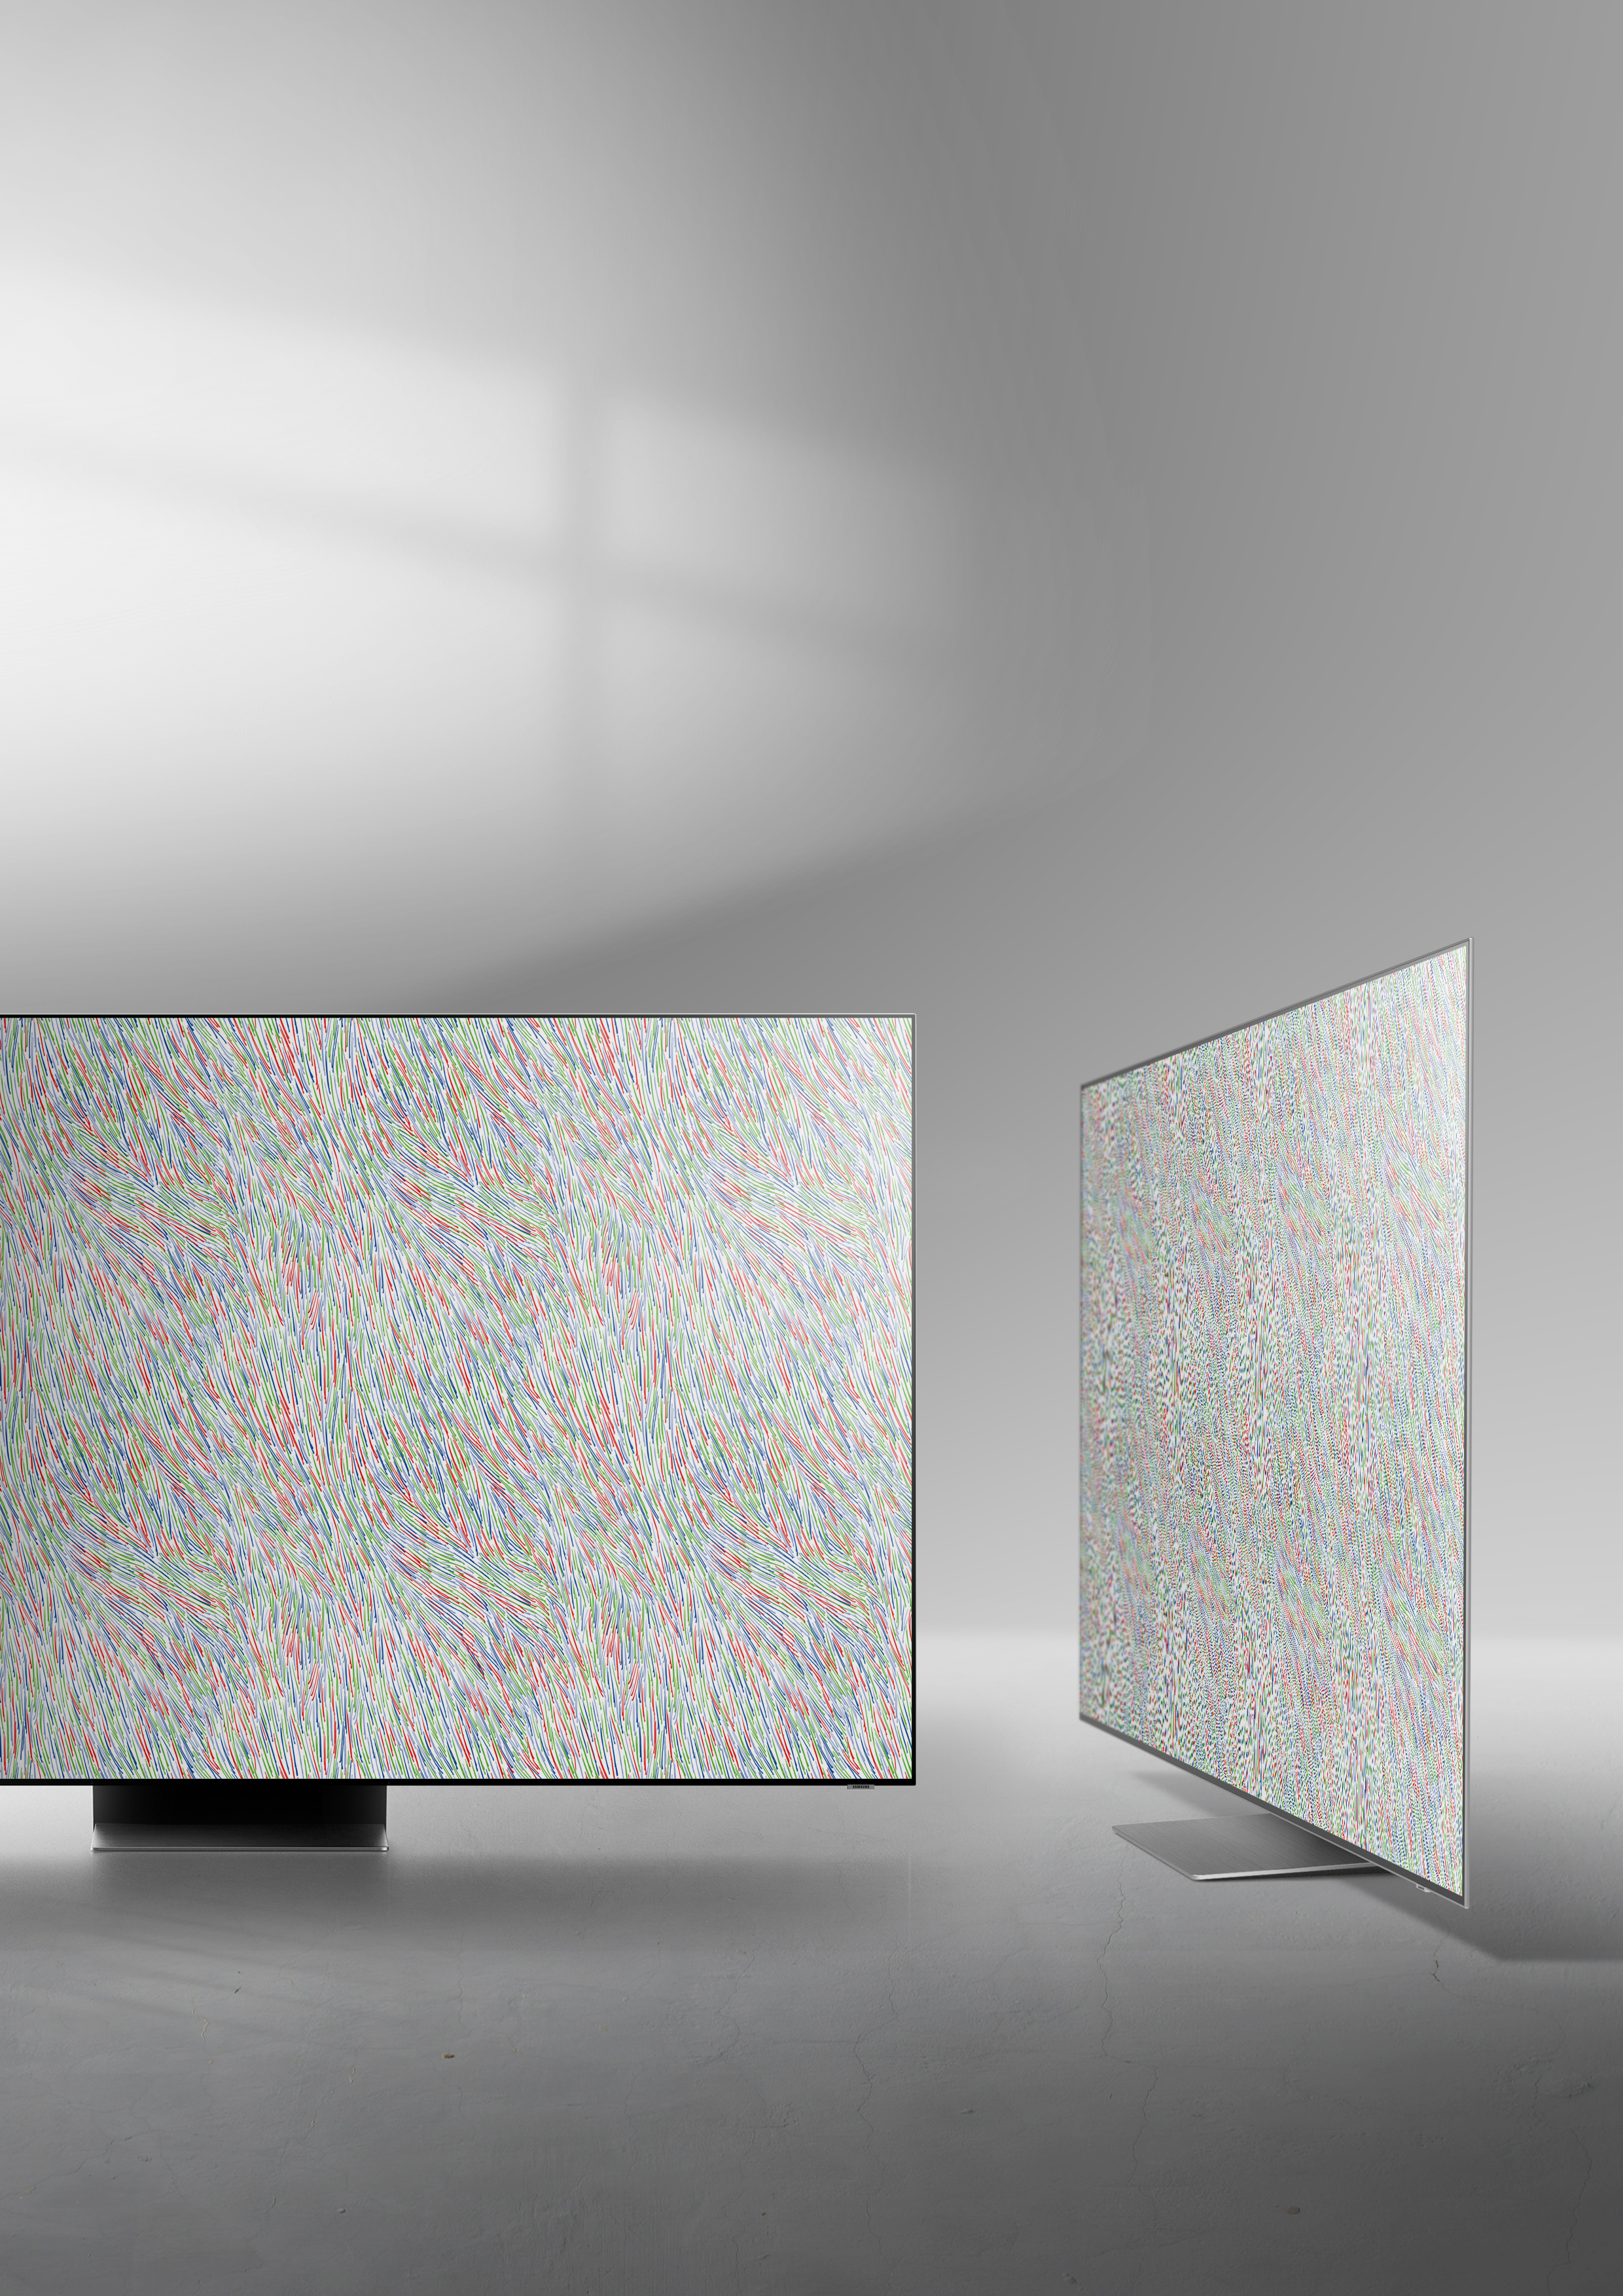 S95B, QD-OLED TV